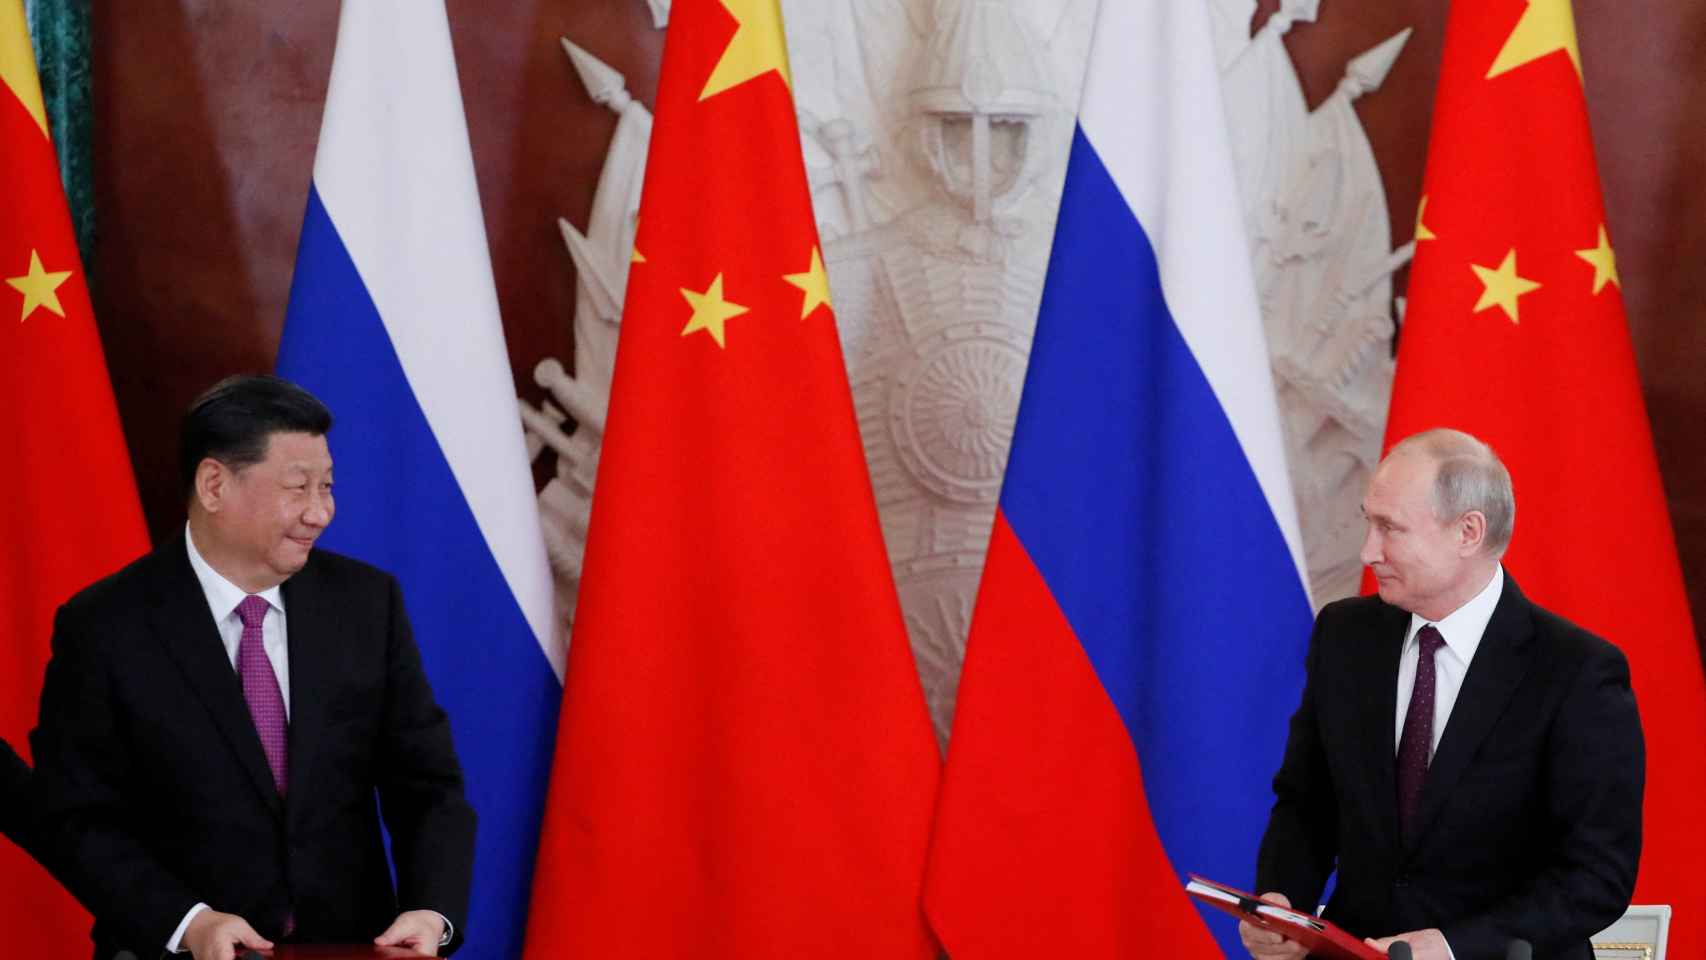 El presidente chino, Xi Jinping, y su homólogo ruso, Vladimir Putin, en una imagen de junio de 2019.